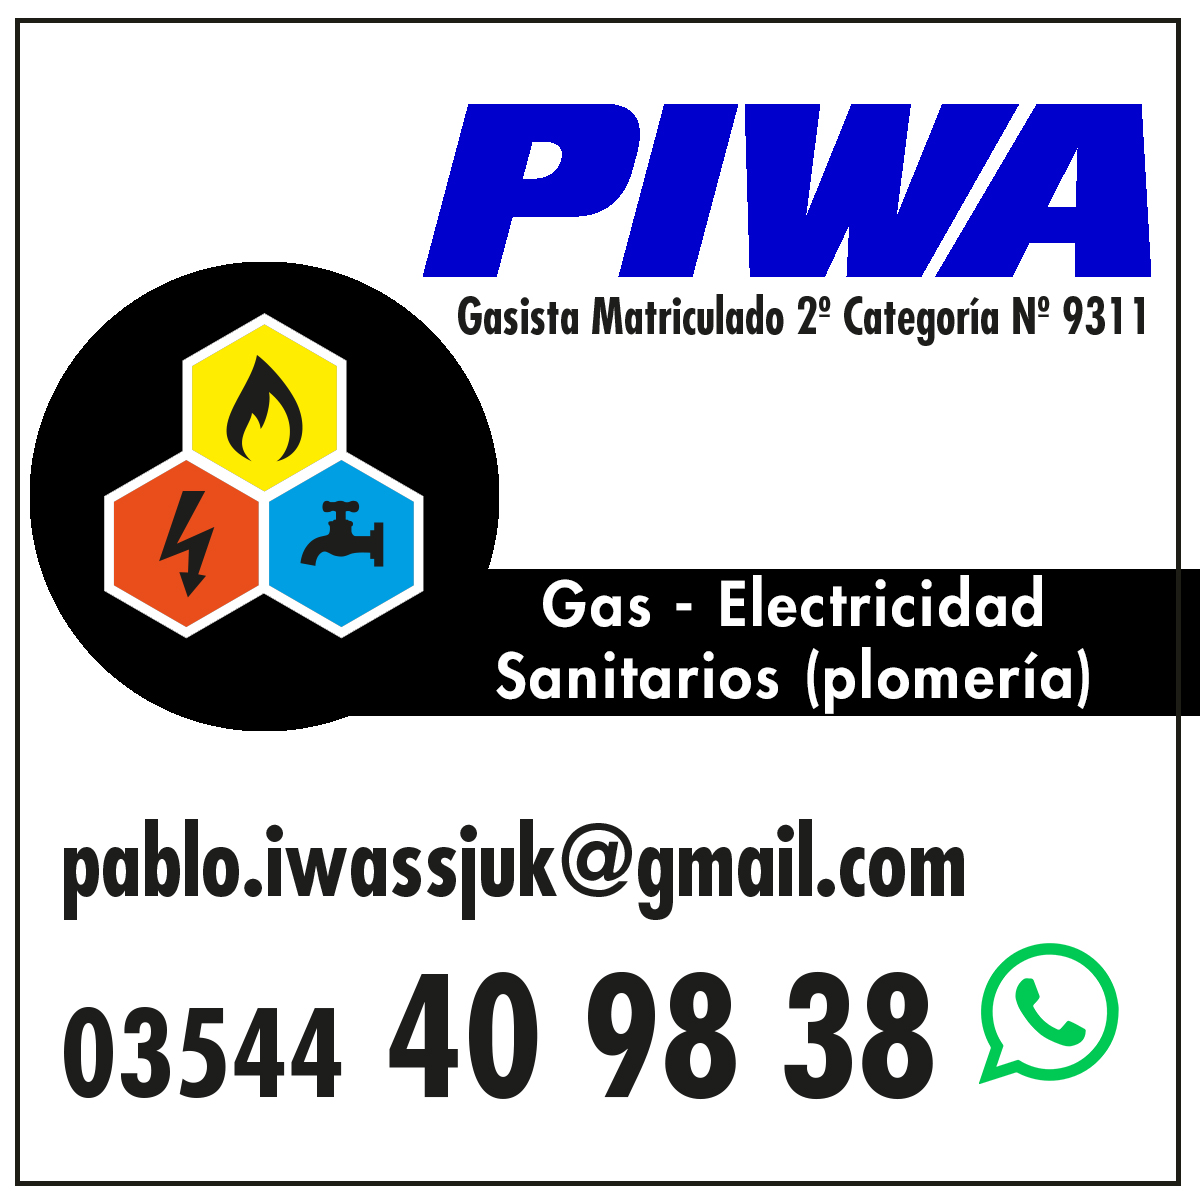 Gasista Piwa - Mina Clavero - Gas, electricidad, sanitarios, plomería, gasista matriculado Pablo Iwassjuk